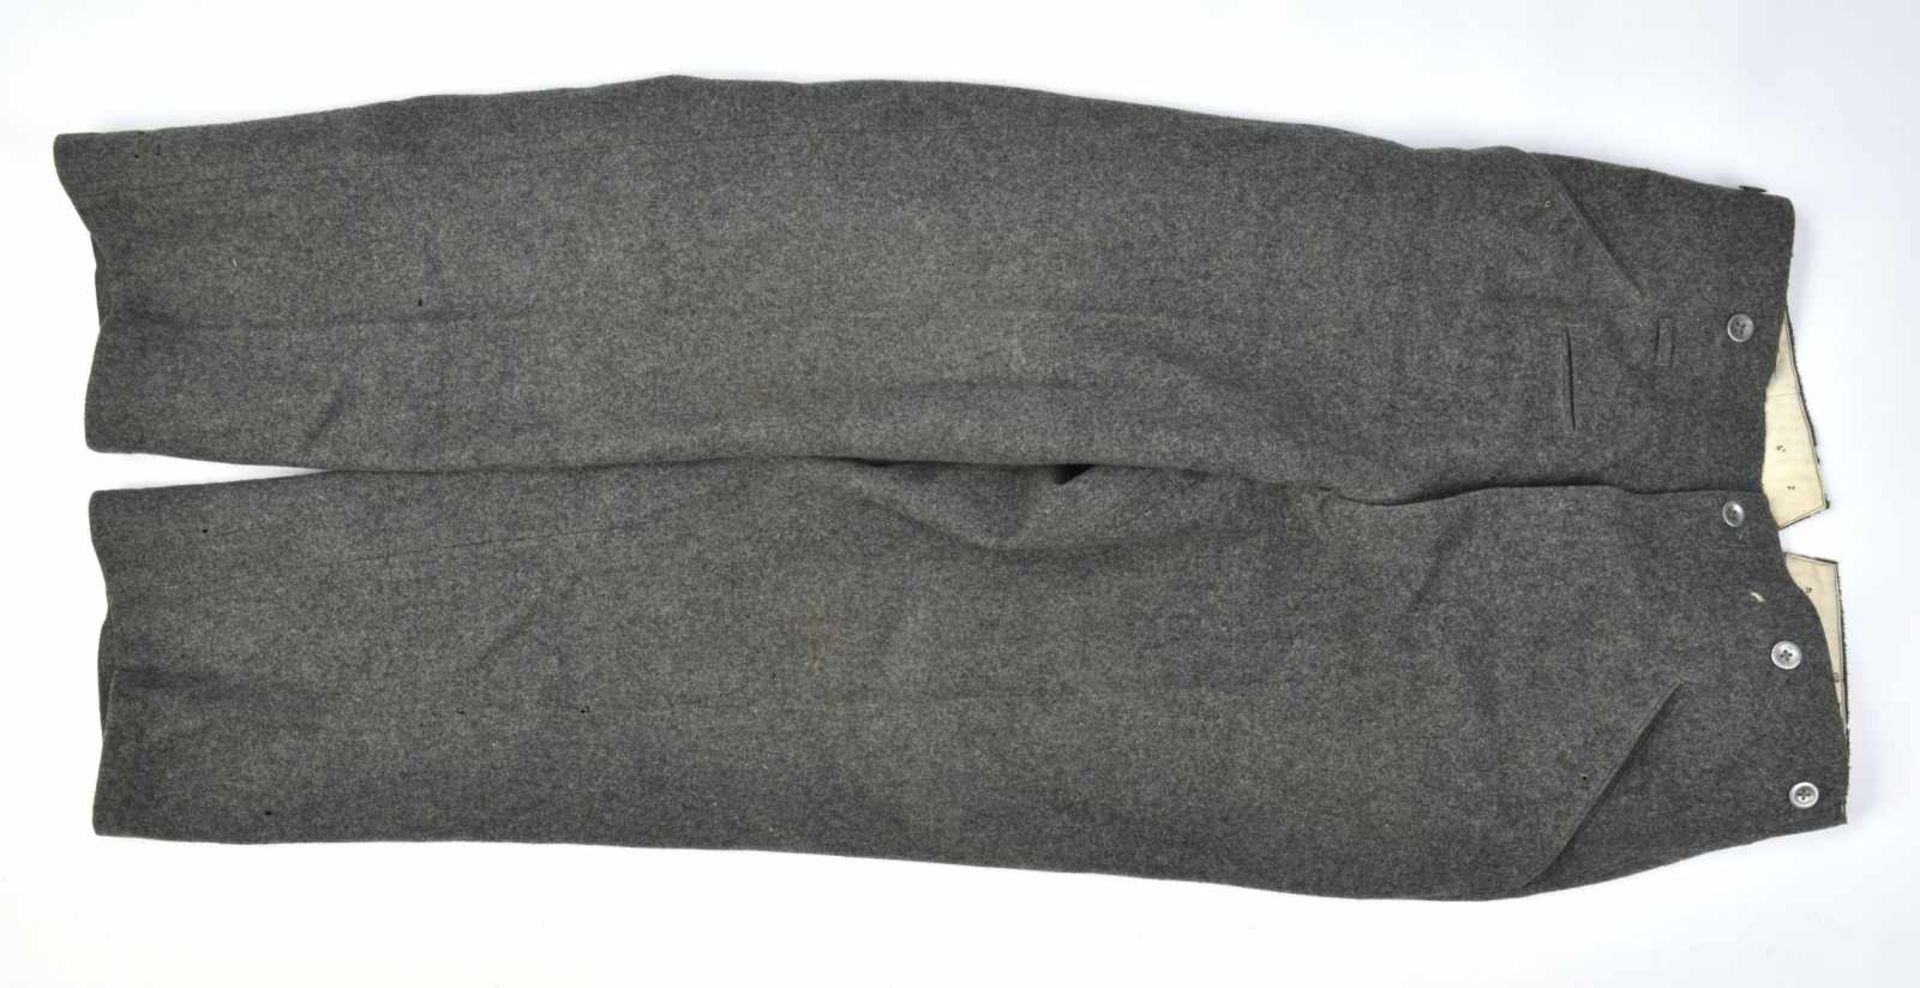 Pantalon gris pierre en drap gris pierre, tous les boutons sont présents. Intérieur en tissu coton